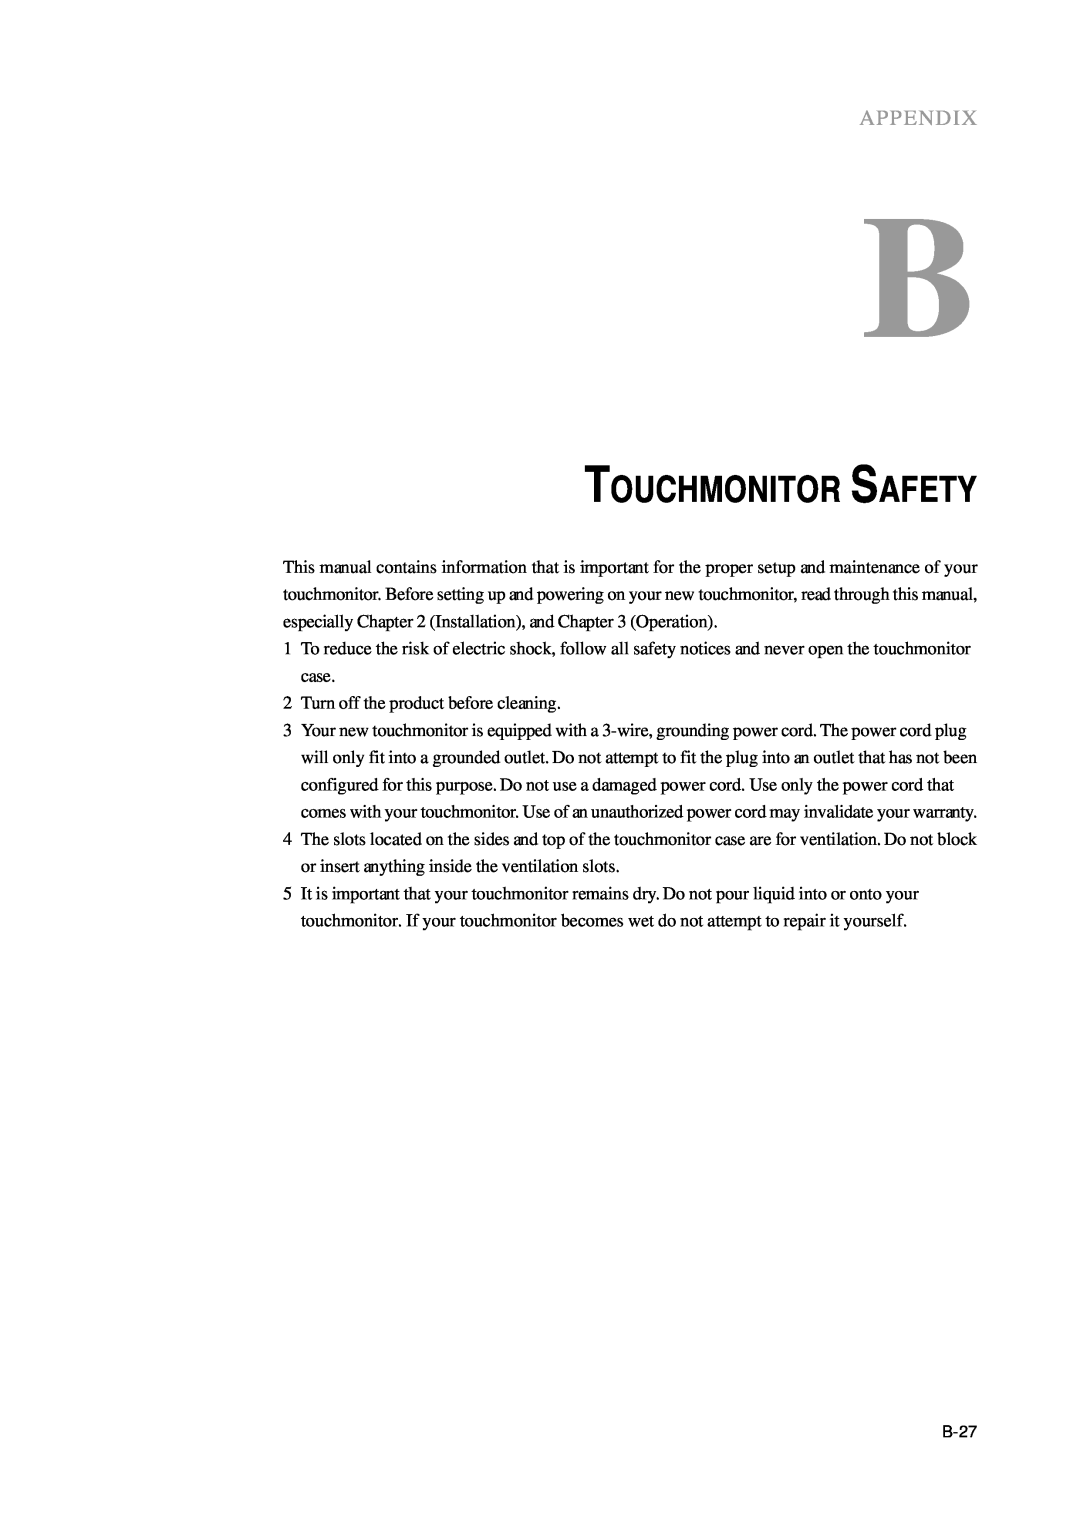 Tyco Electronics B1ET-1215L, ET1215L manual Touchmonitor Safety, Appendix 